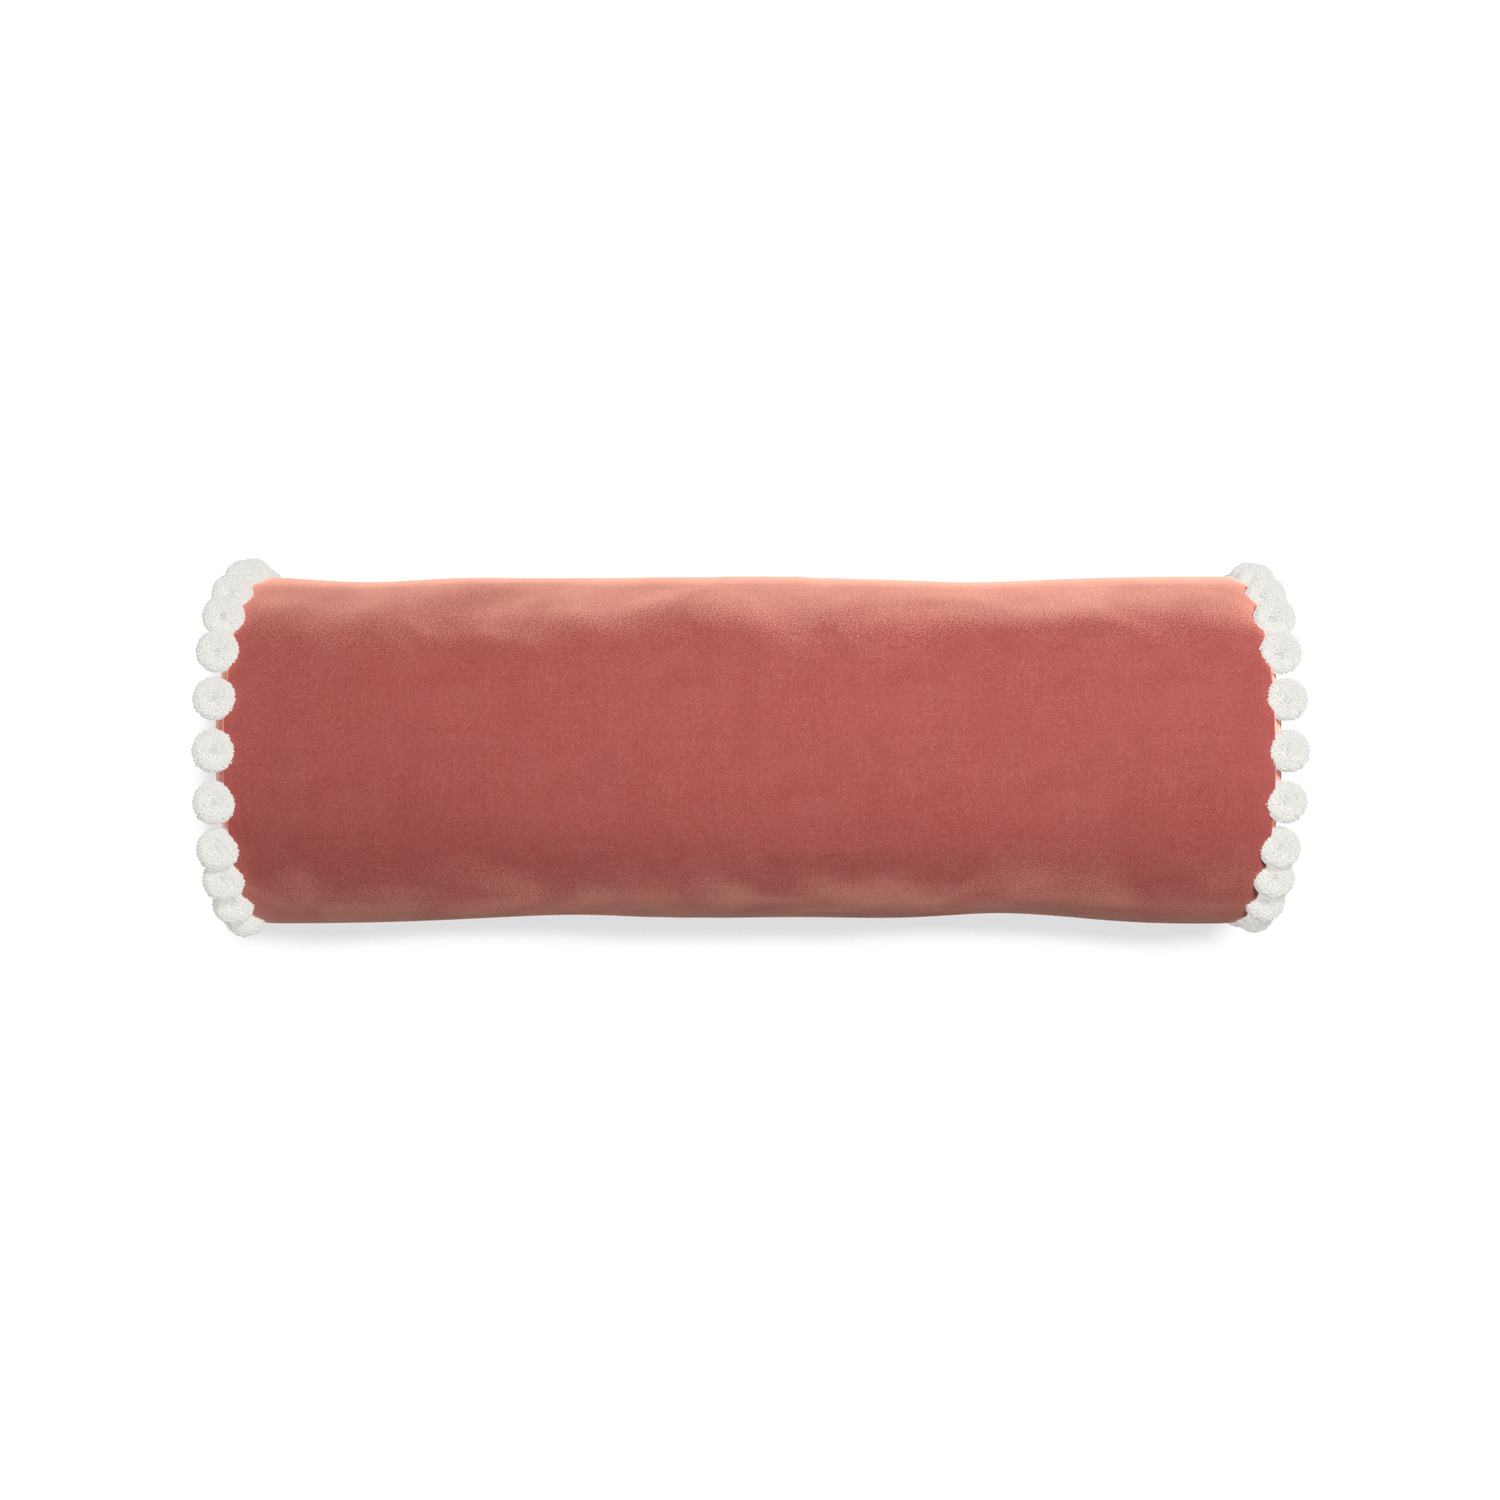 bolster coral velvet pillow with white pom poms